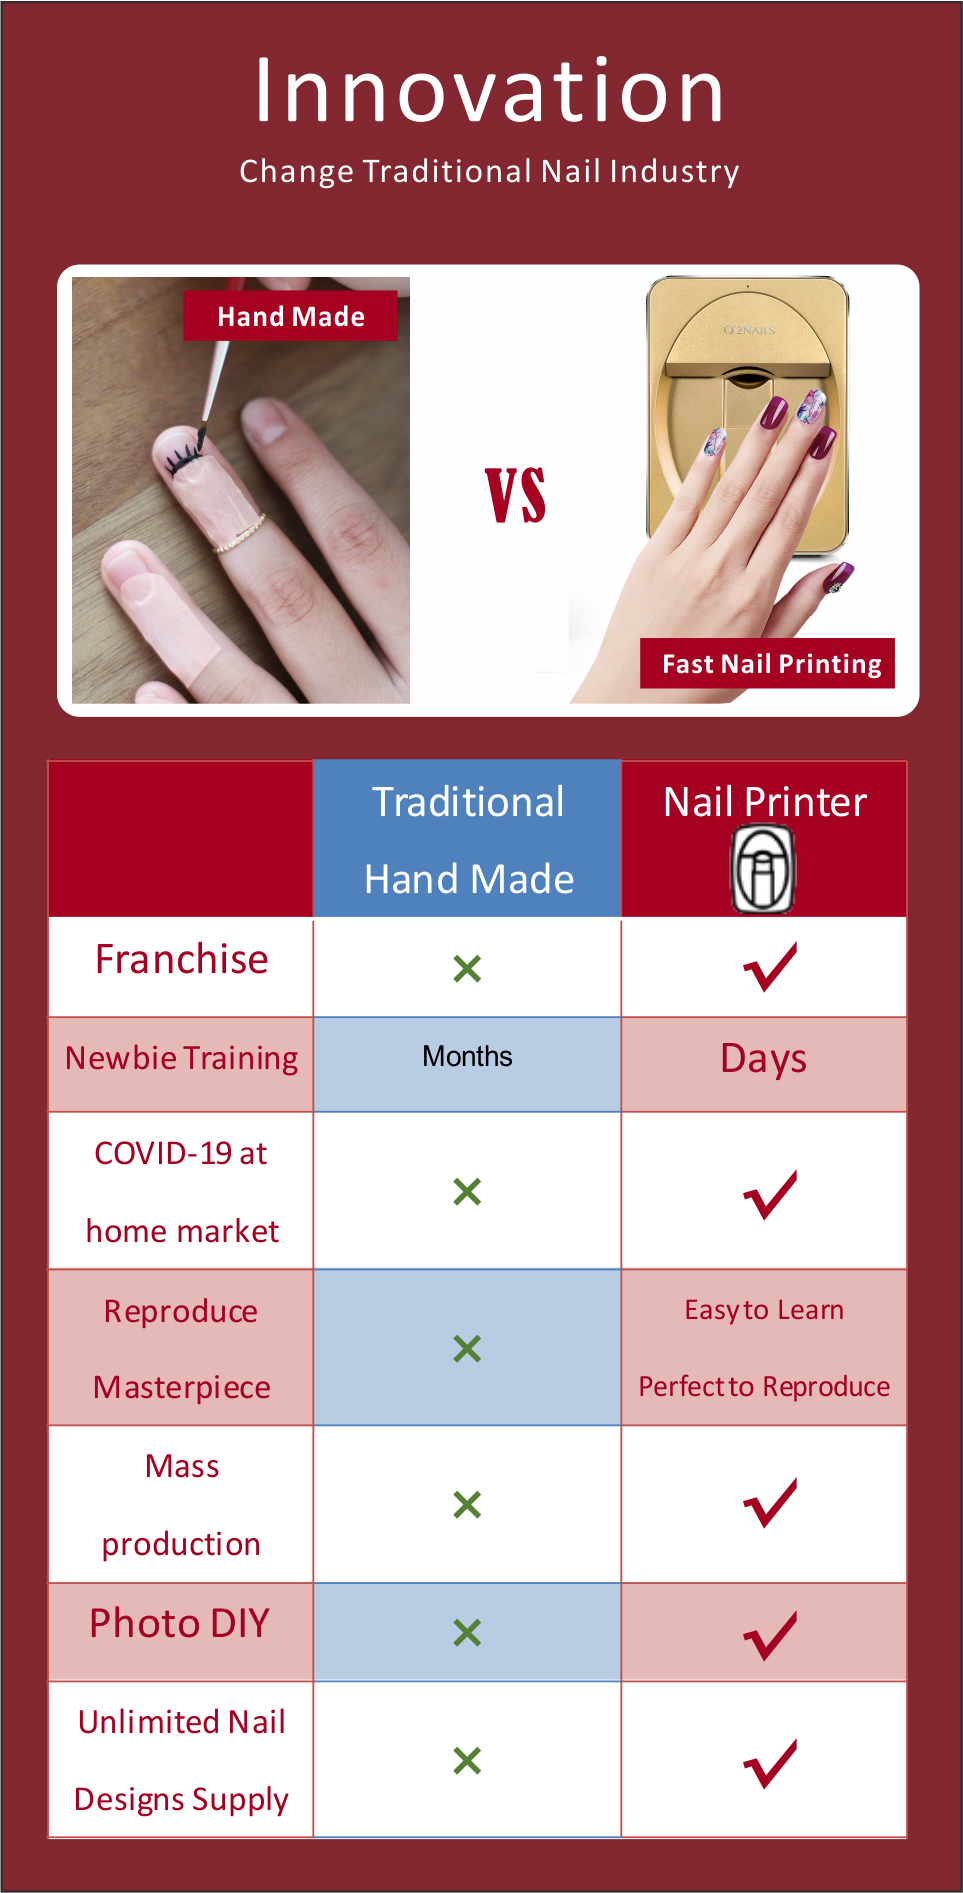  O2NAILS Impresora de uñas portátil M1 Máquina de impresión de  arte de uñas móvil para uso doméstico y salón de uñas (blanco) : Todo lo  demás